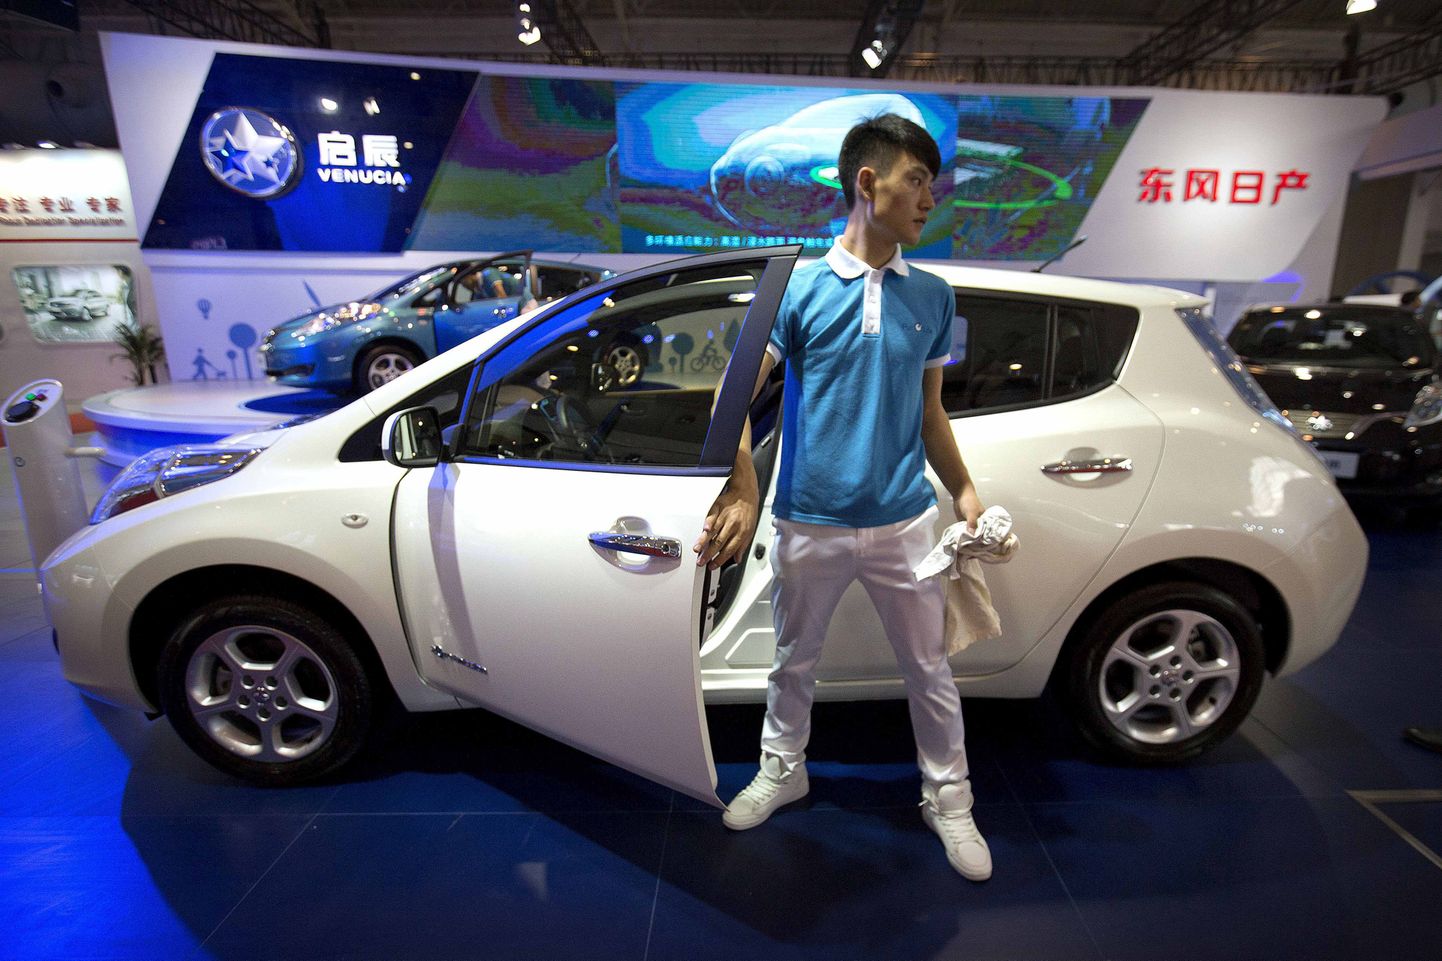 Hiina autotootja Venucia elektriauto Morning Wind Pekingi autonäitusel.